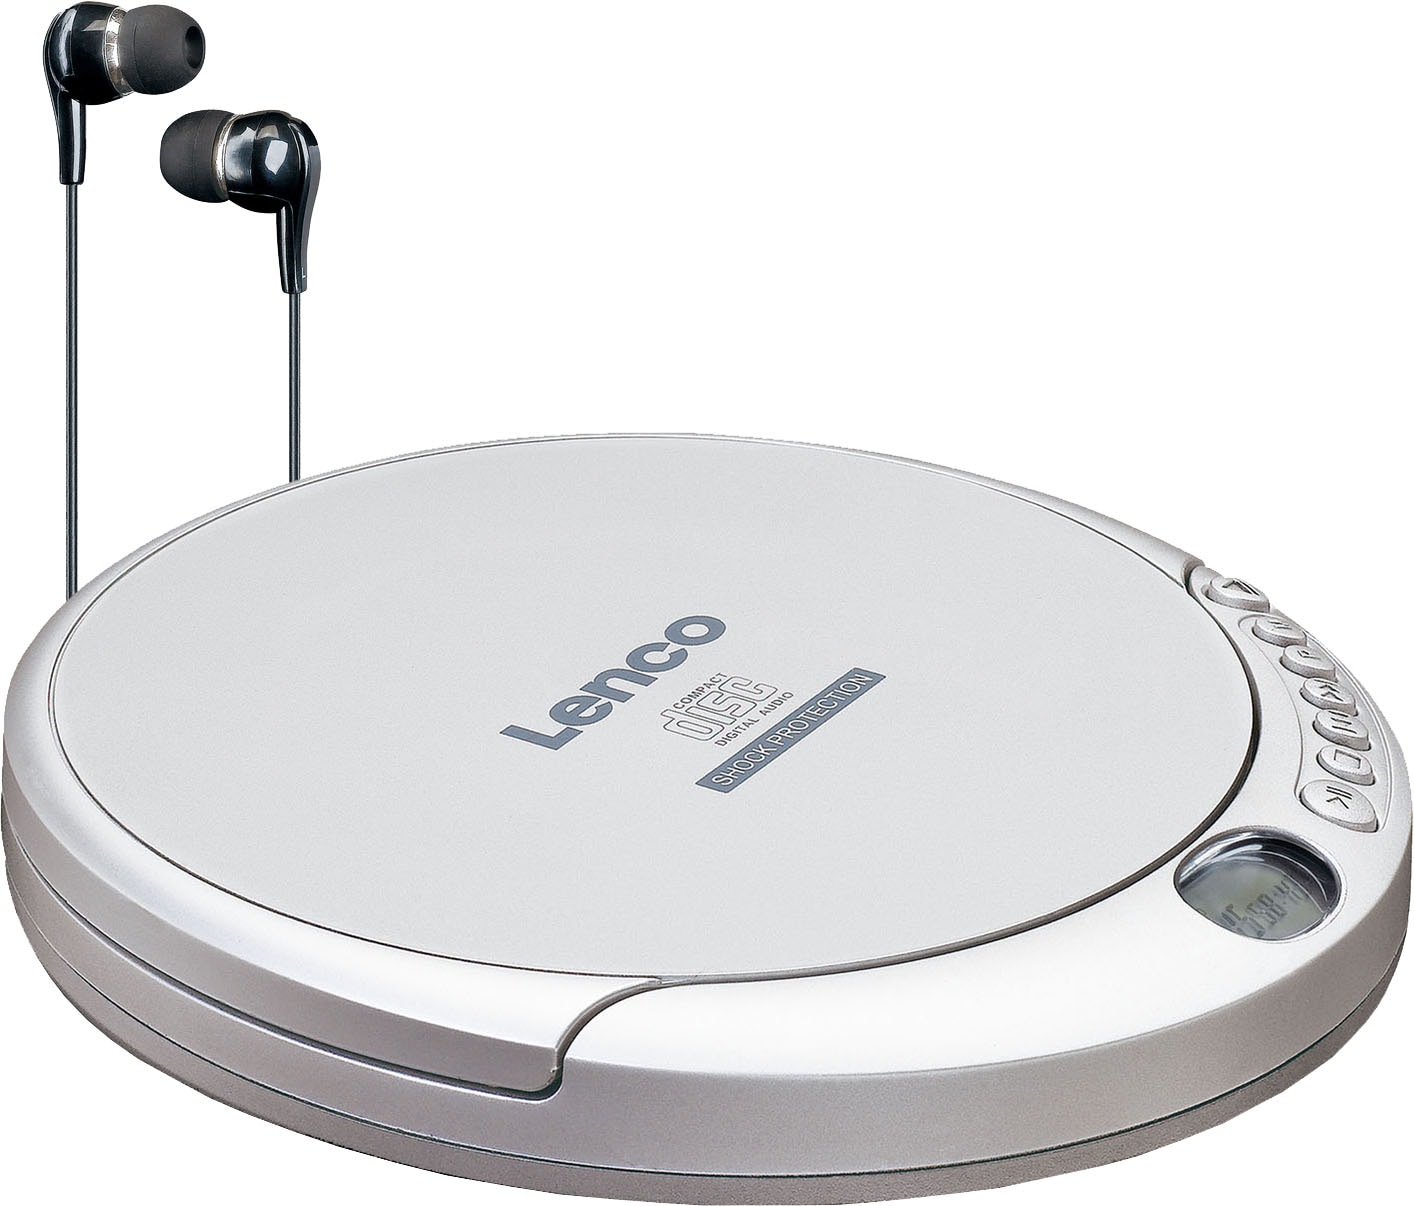 CD-Player online kaufen | Audio-Geräte in Markenqualität bei OTTO